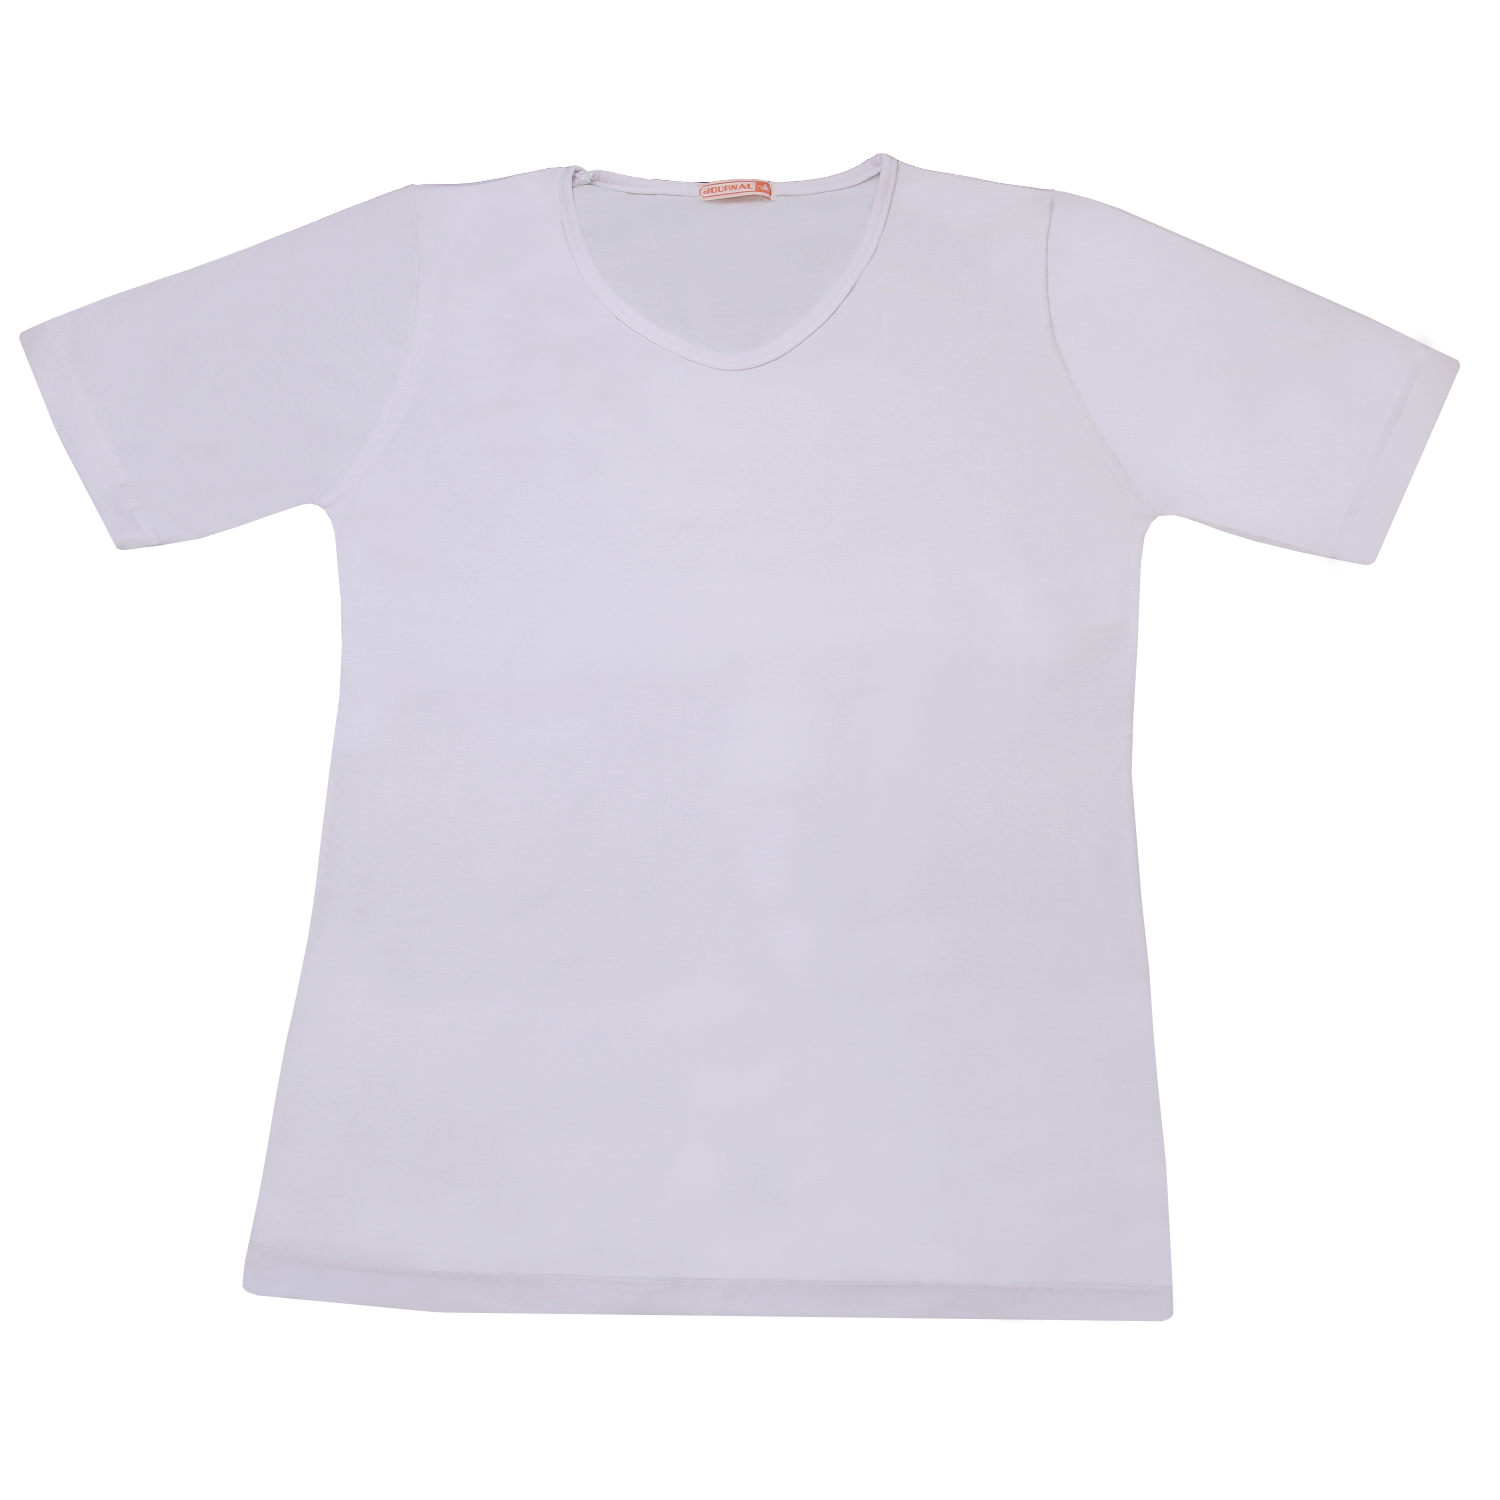 تی شرت زنانه کد 21702 رنگ سفید